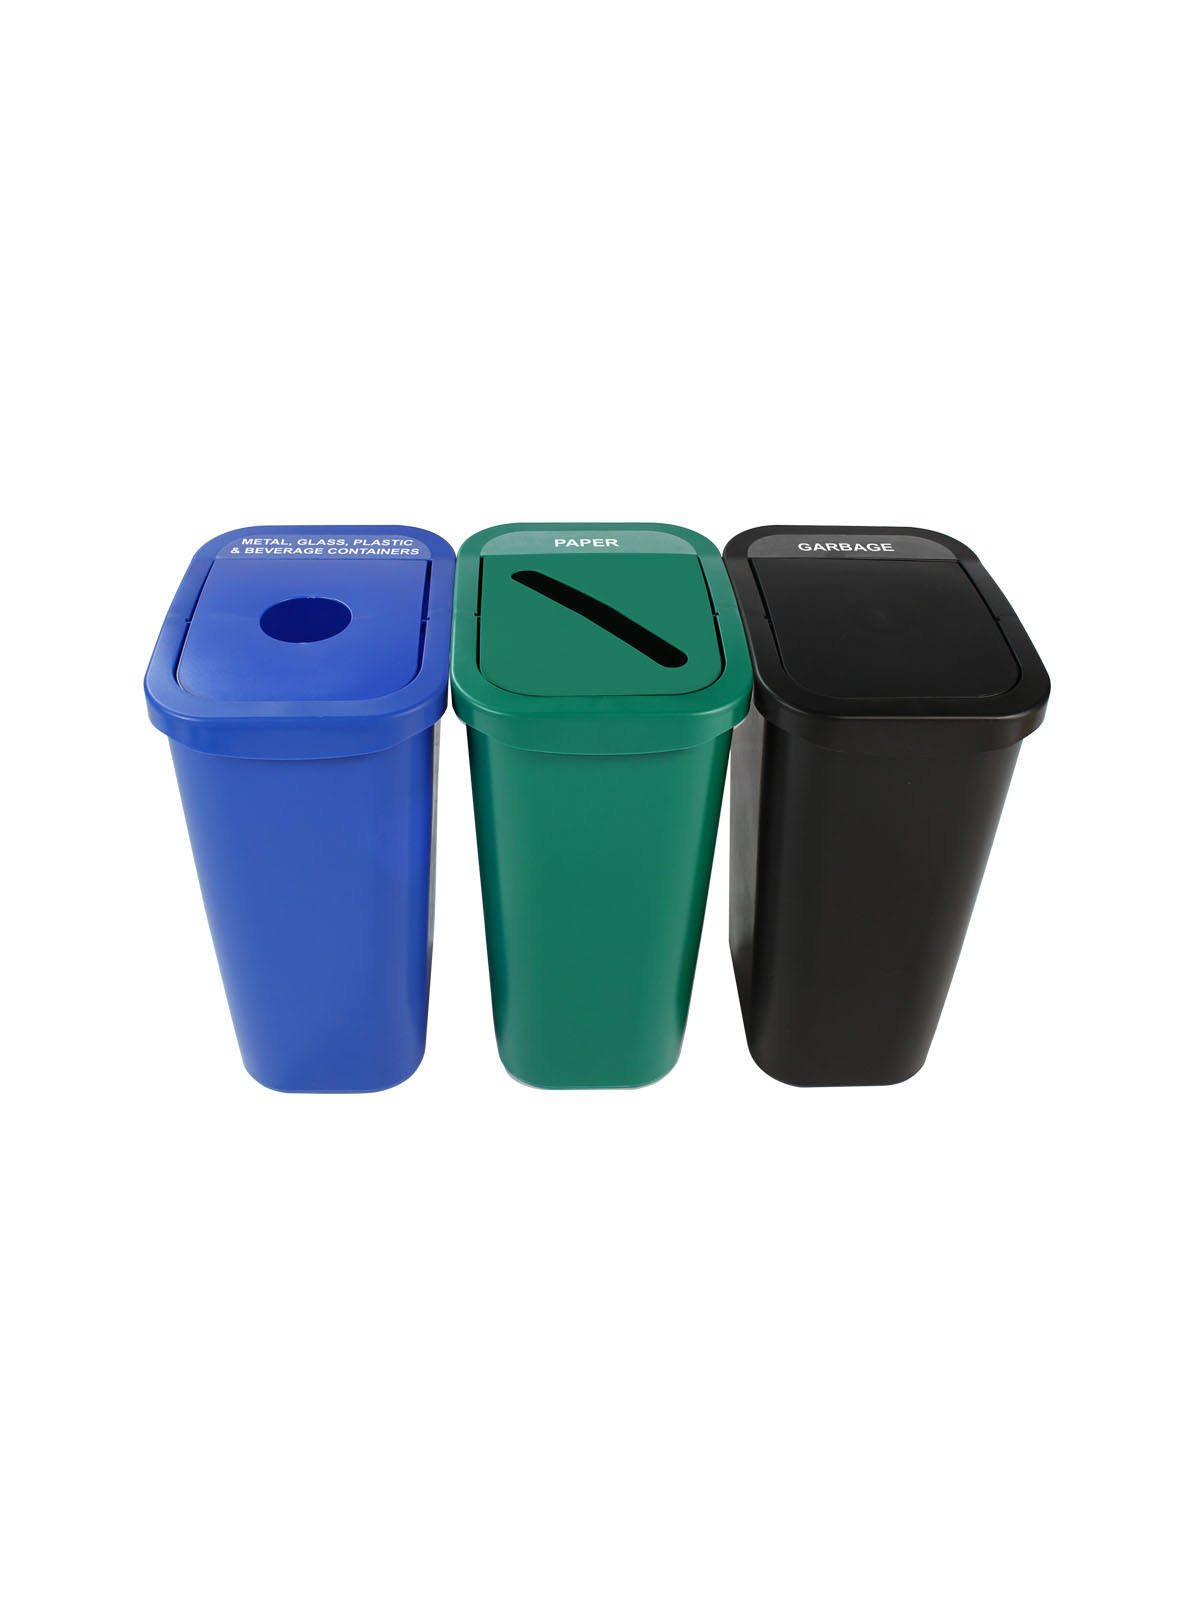 比尔盒 - 三重 - 纽约州兼容 - 金属，玻璃，塑料和饮料集装箱 - 纸垃圾 - 圈槽 - 摆动 - 蓝绿色标题=